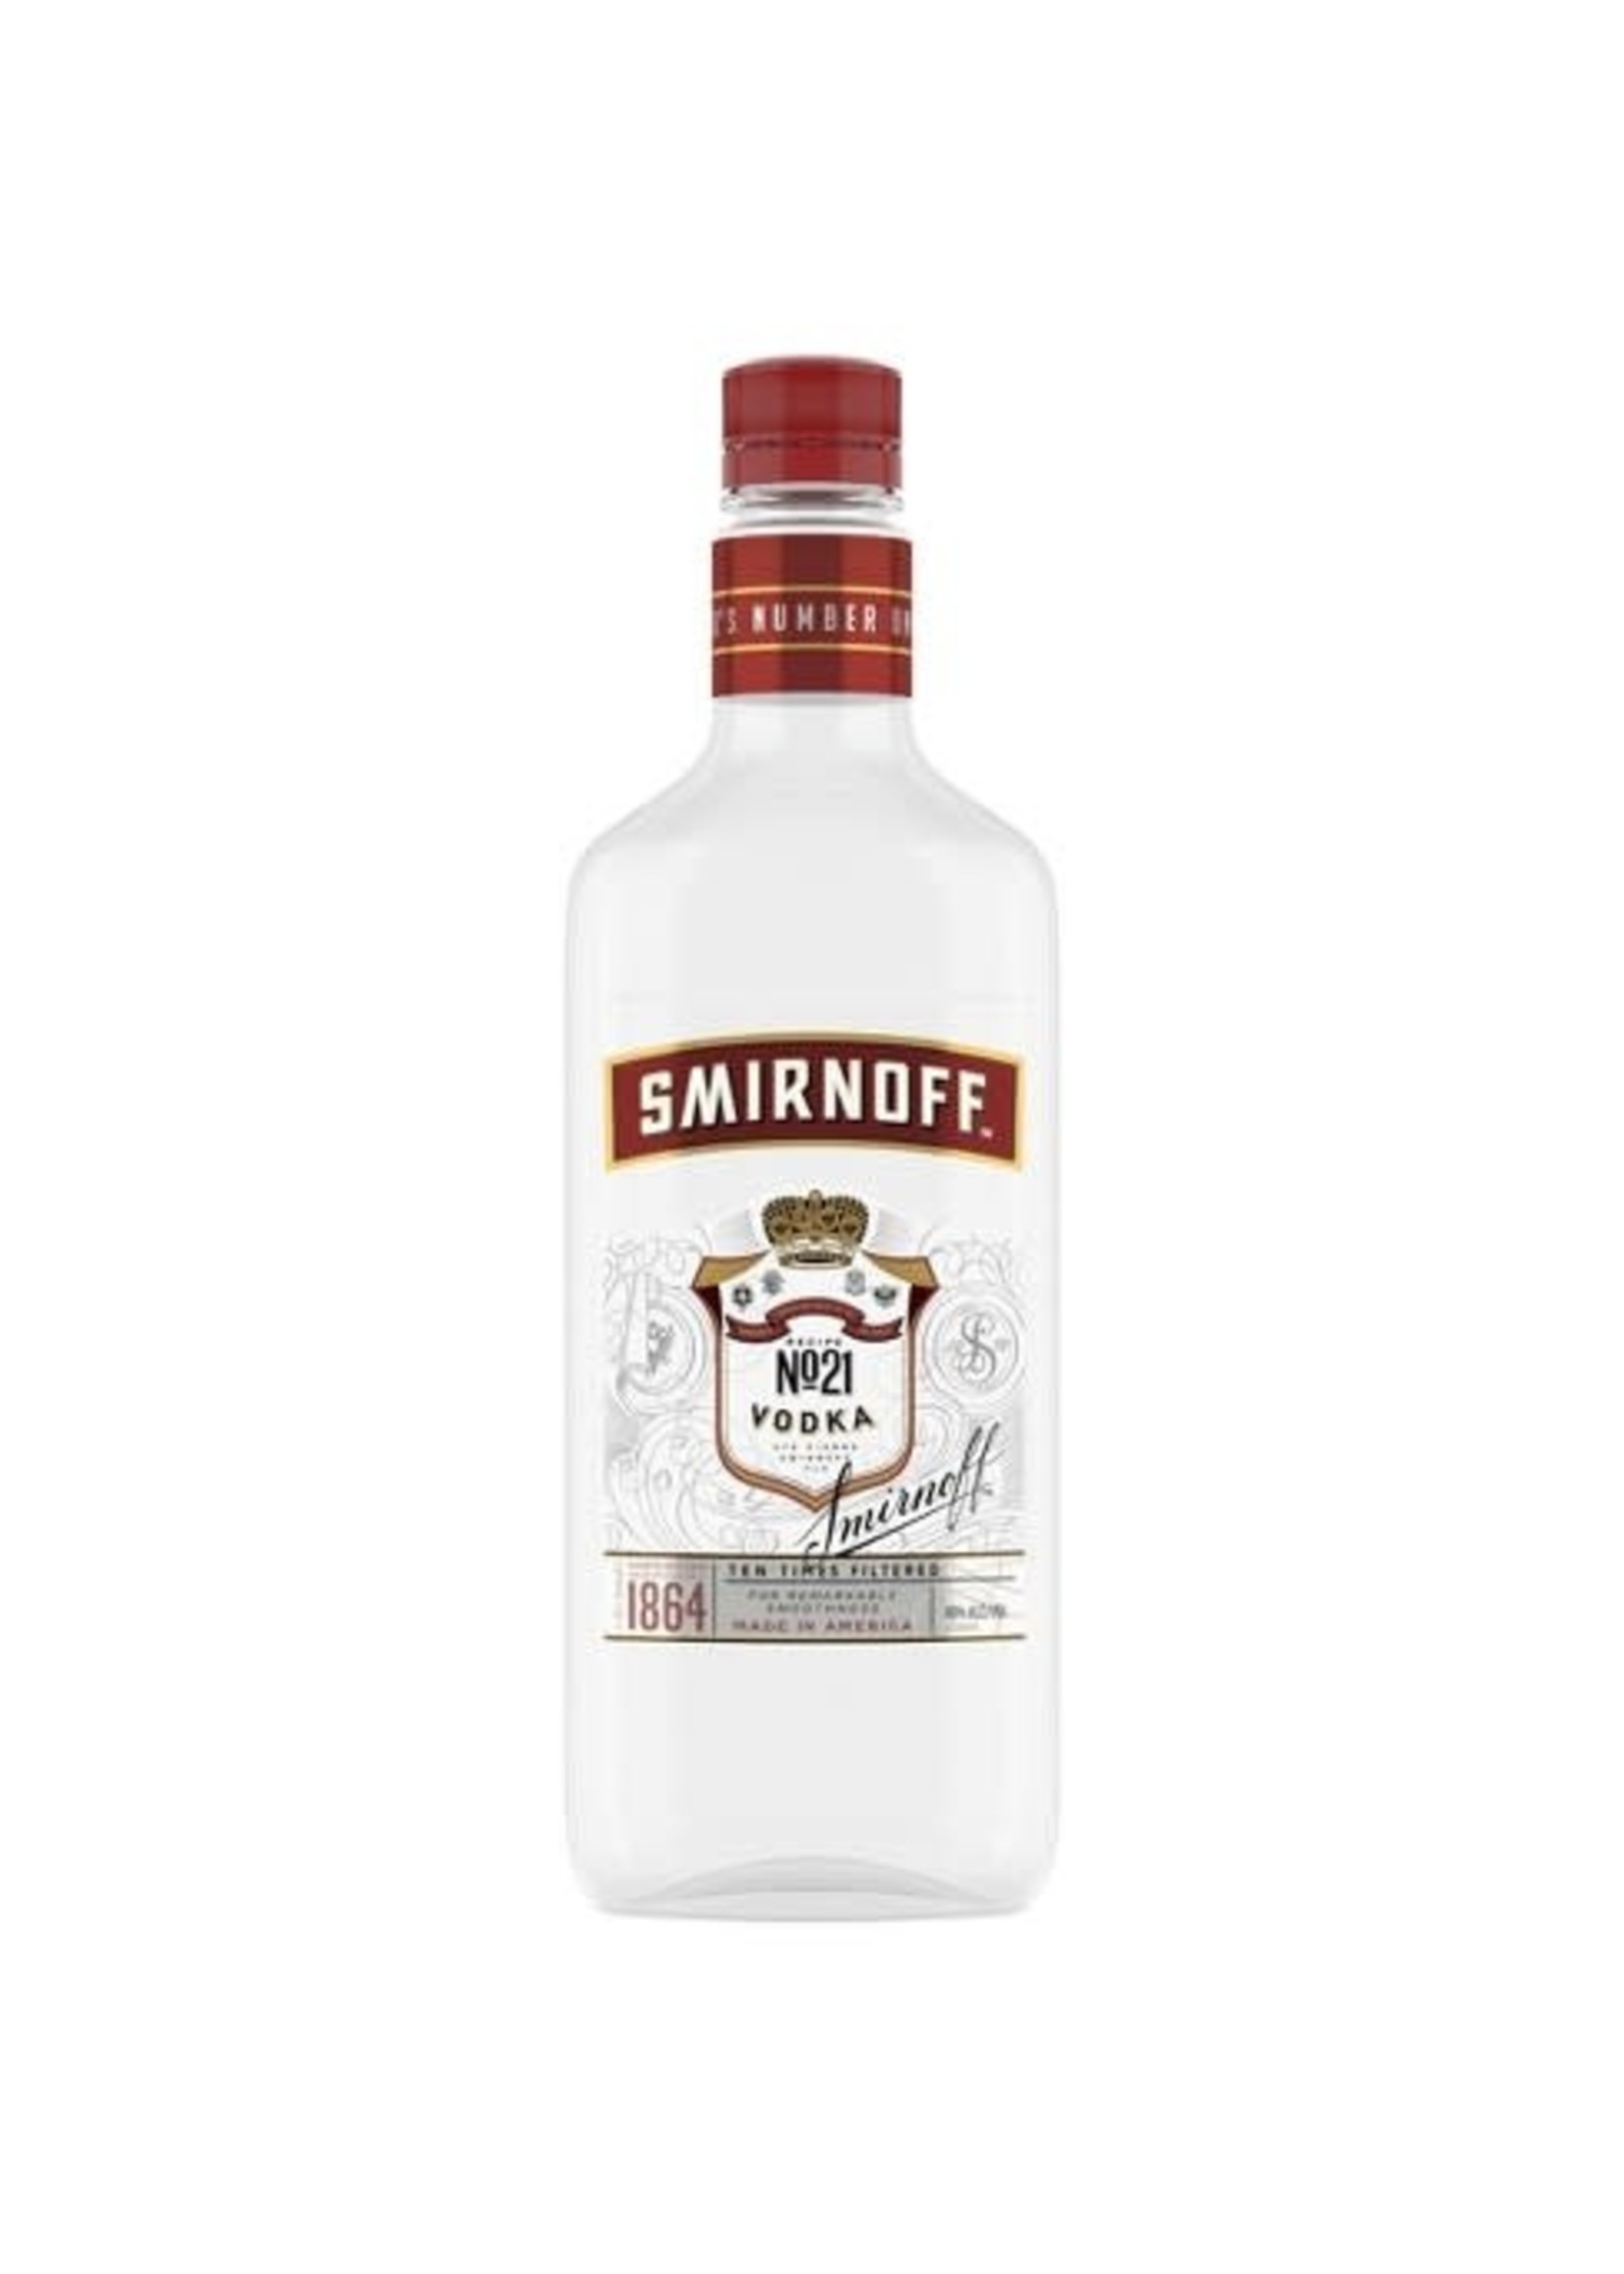 Smirnoff Original Vodka 80Proof Pet 750ml